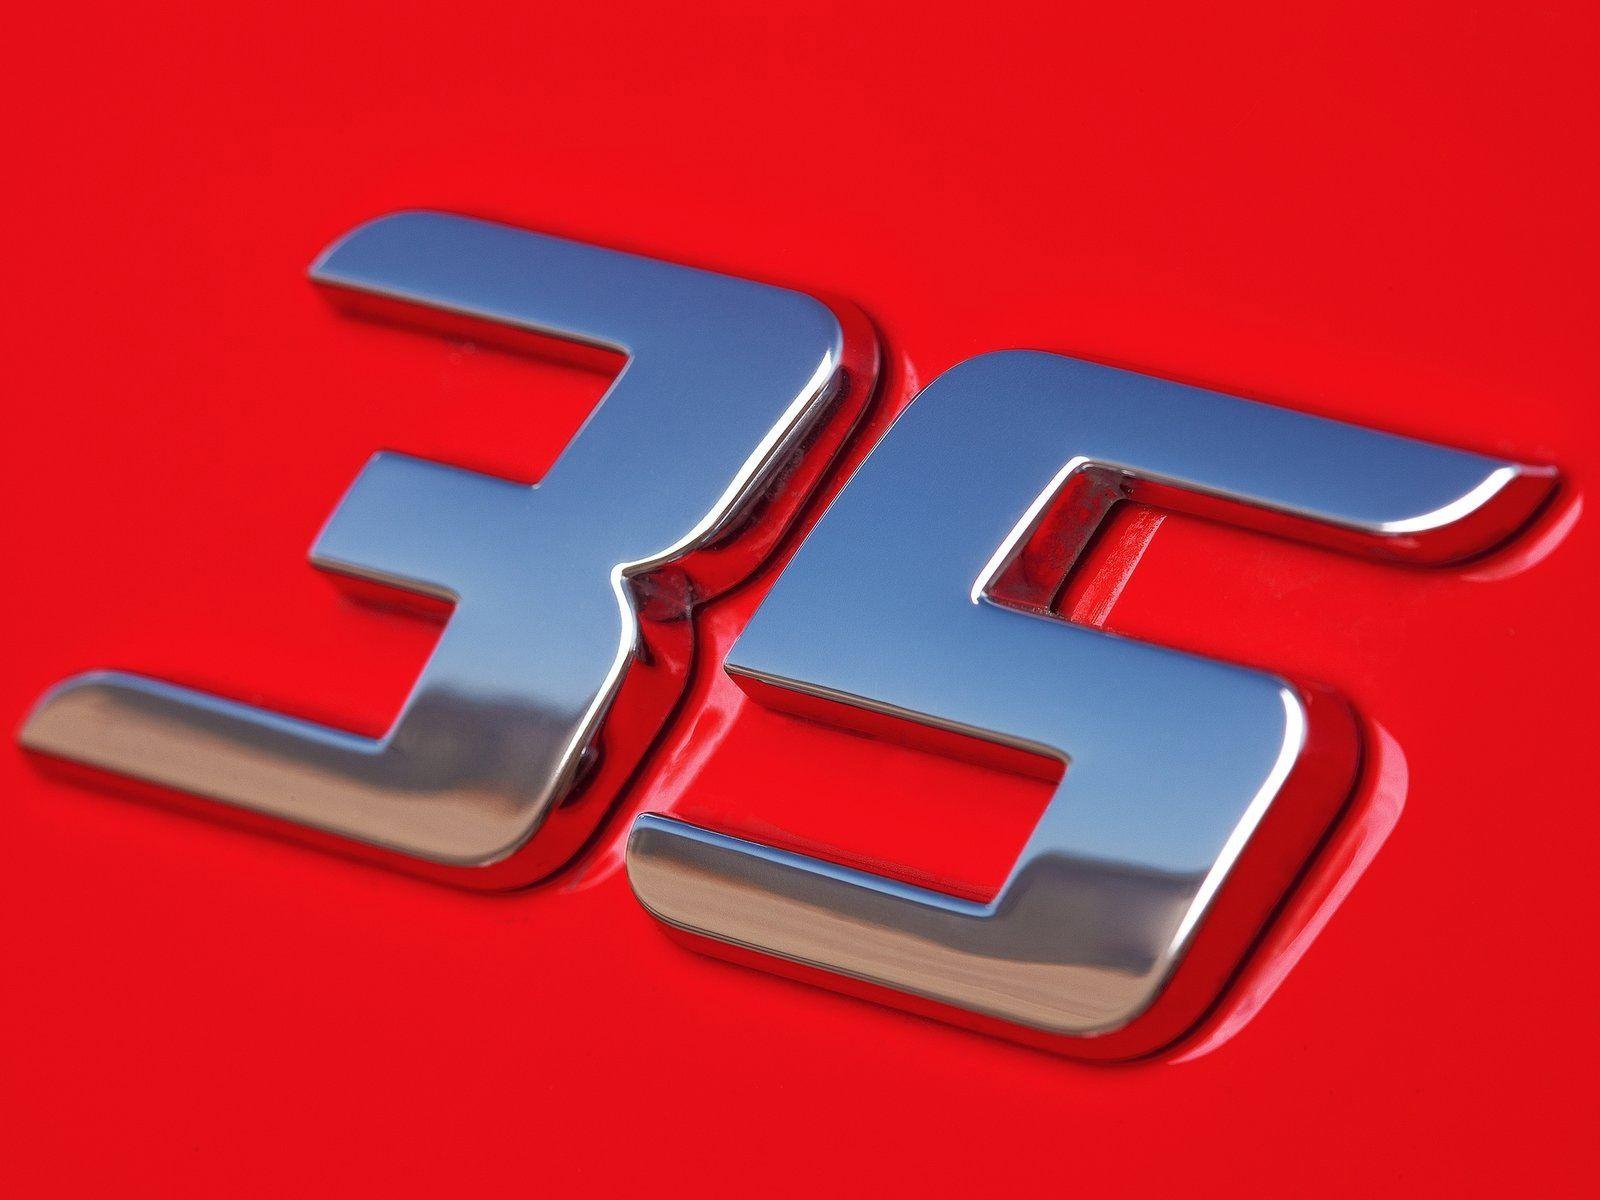 35 Logo - Golf GTI Edition 35 logo